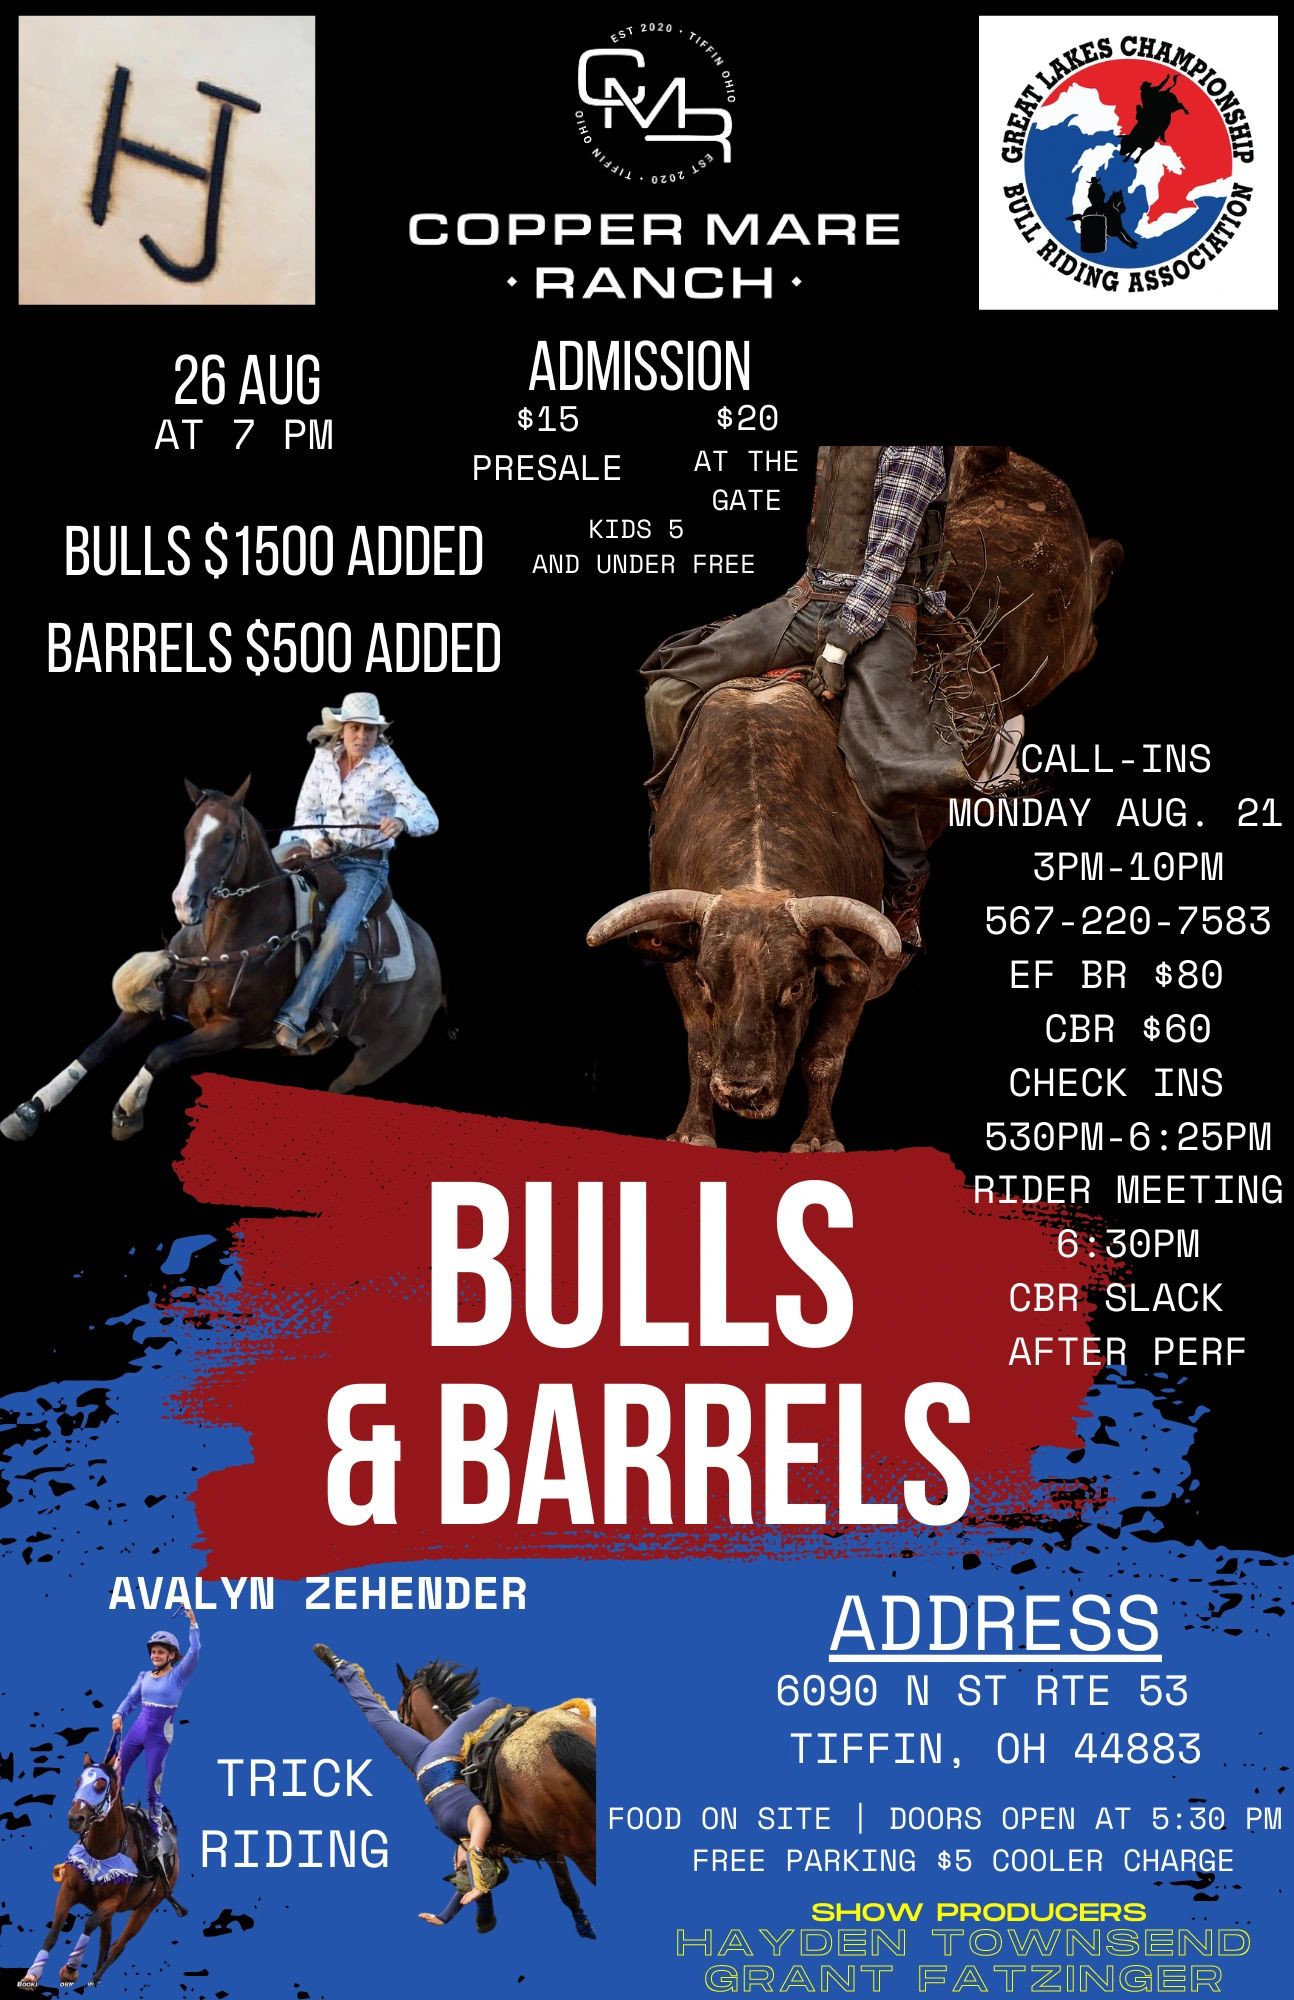 Ticket Link
https://www.eventbrite.com/e/bulls-and-barrels-at-copper-mare-ranch-tickets-660667222447